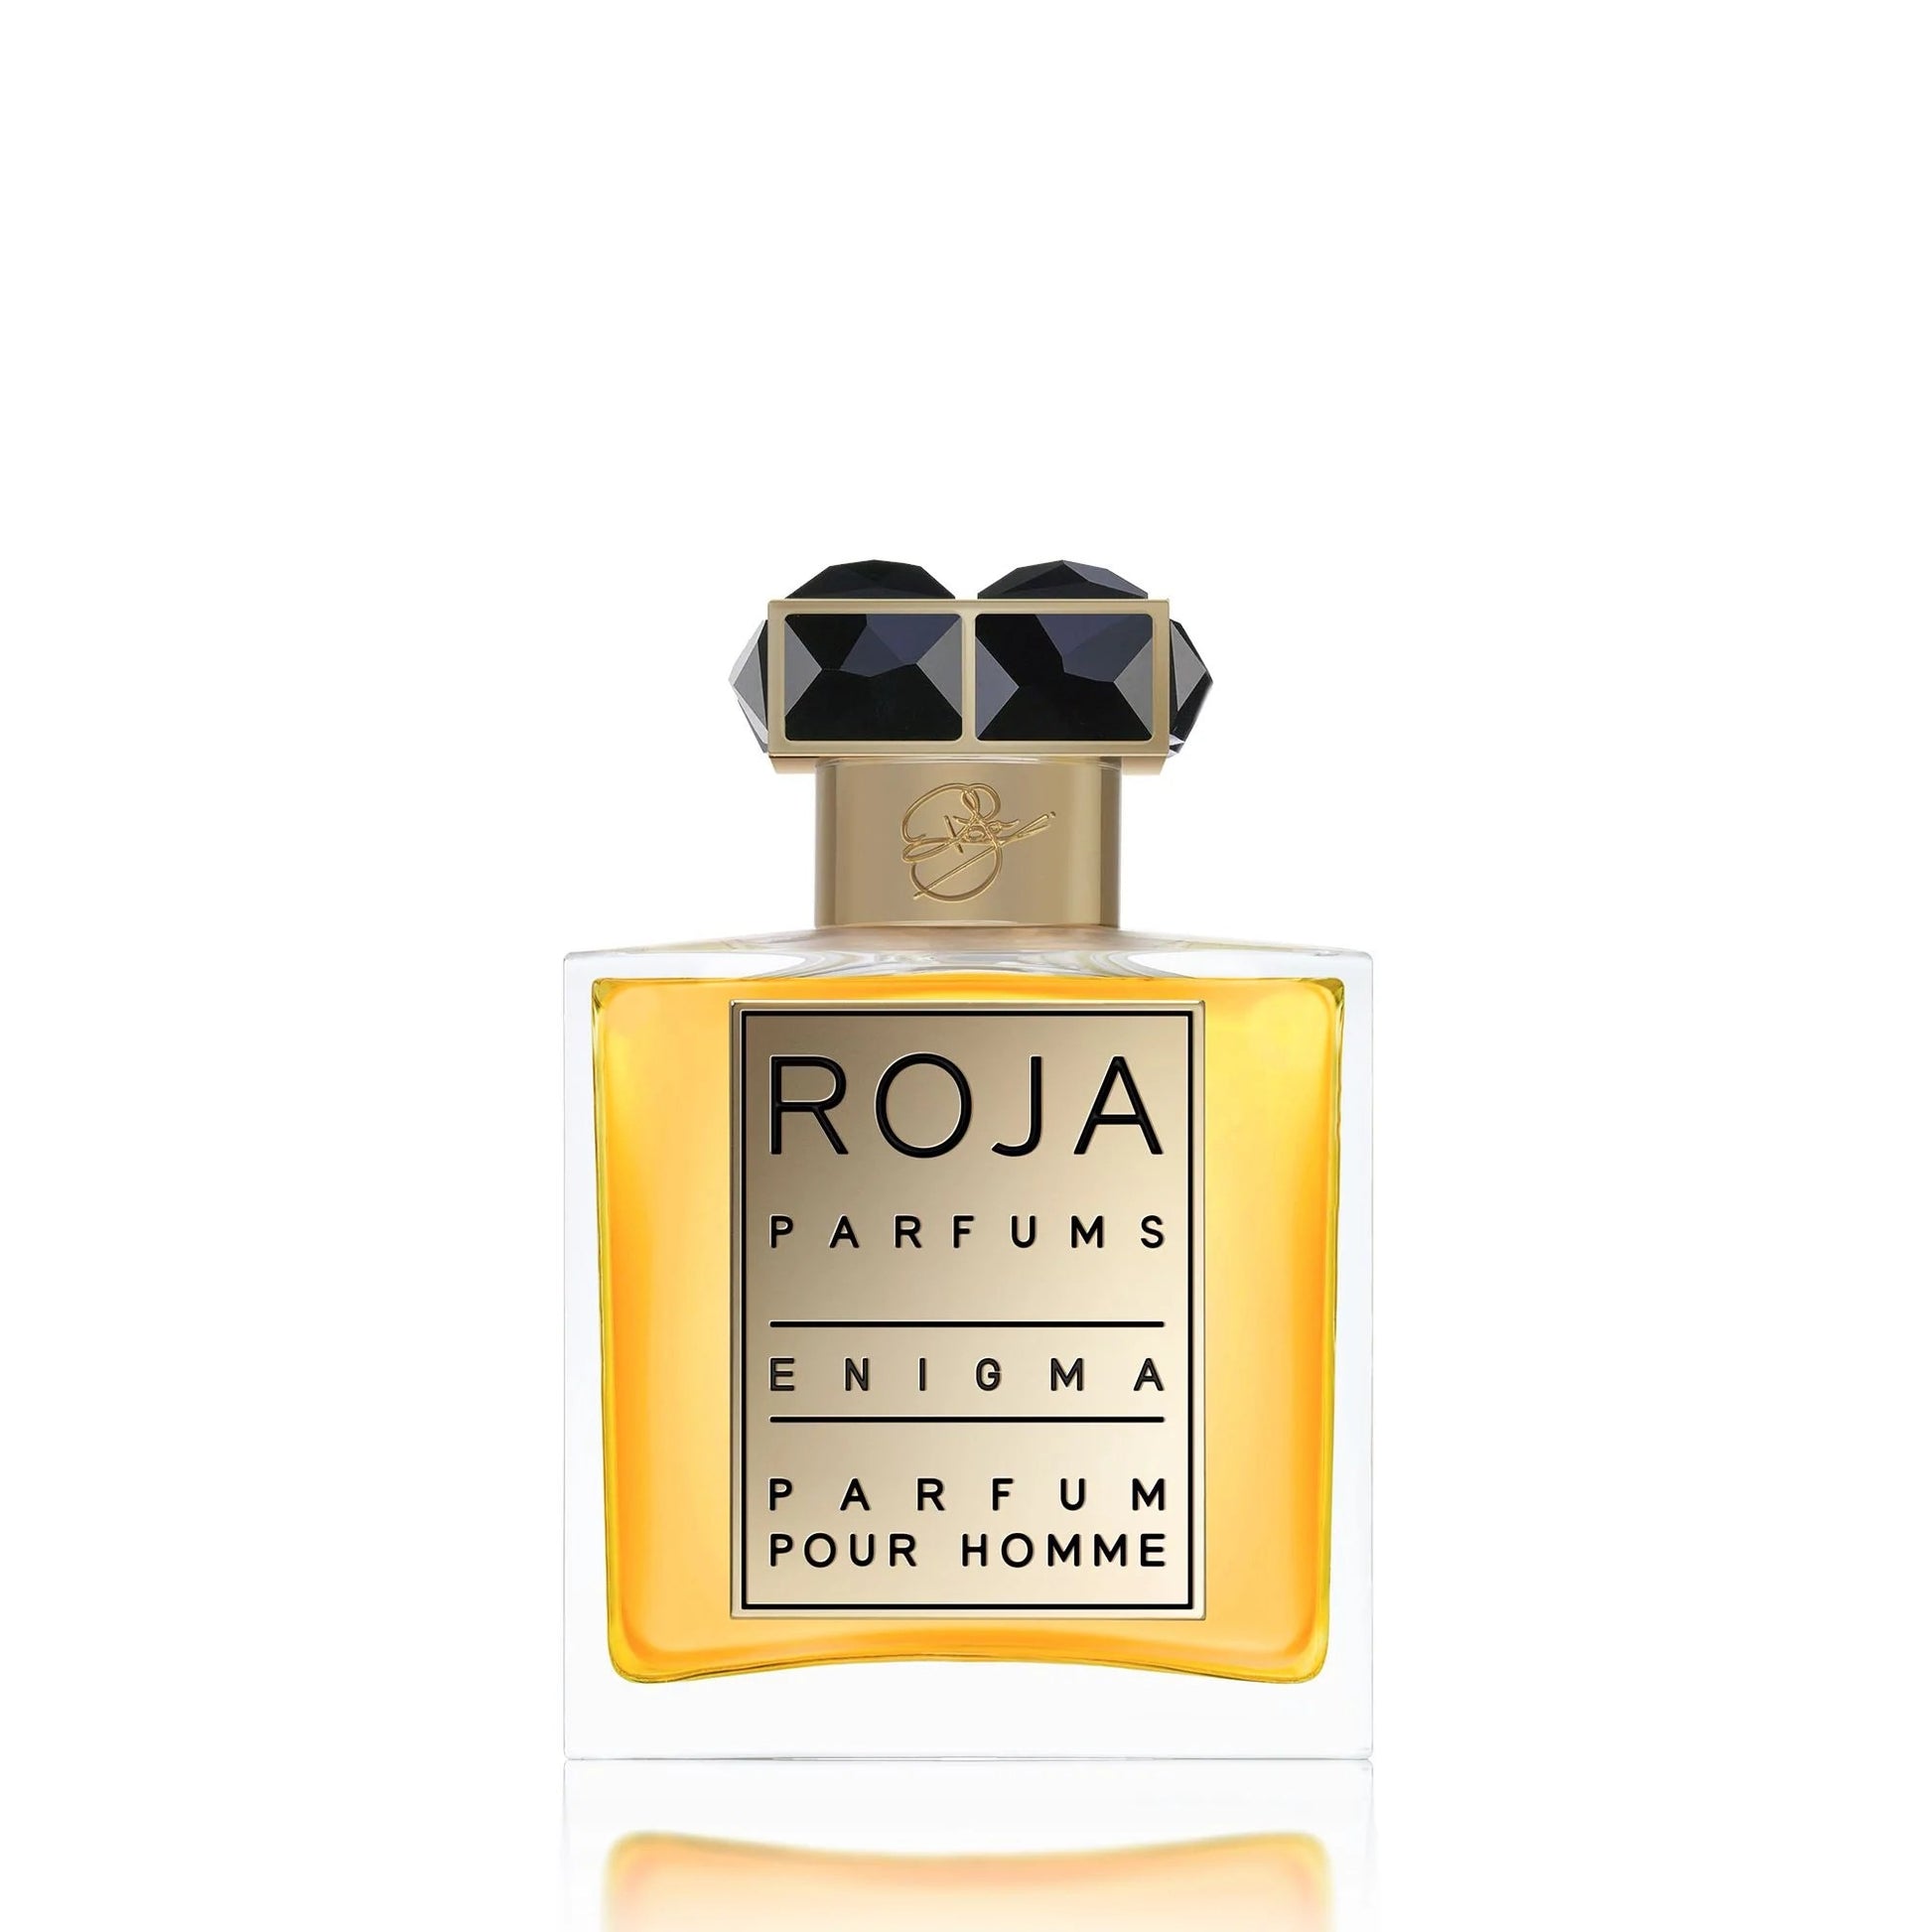 Roja Parfums - Enigma - Parfum Pour Homme.